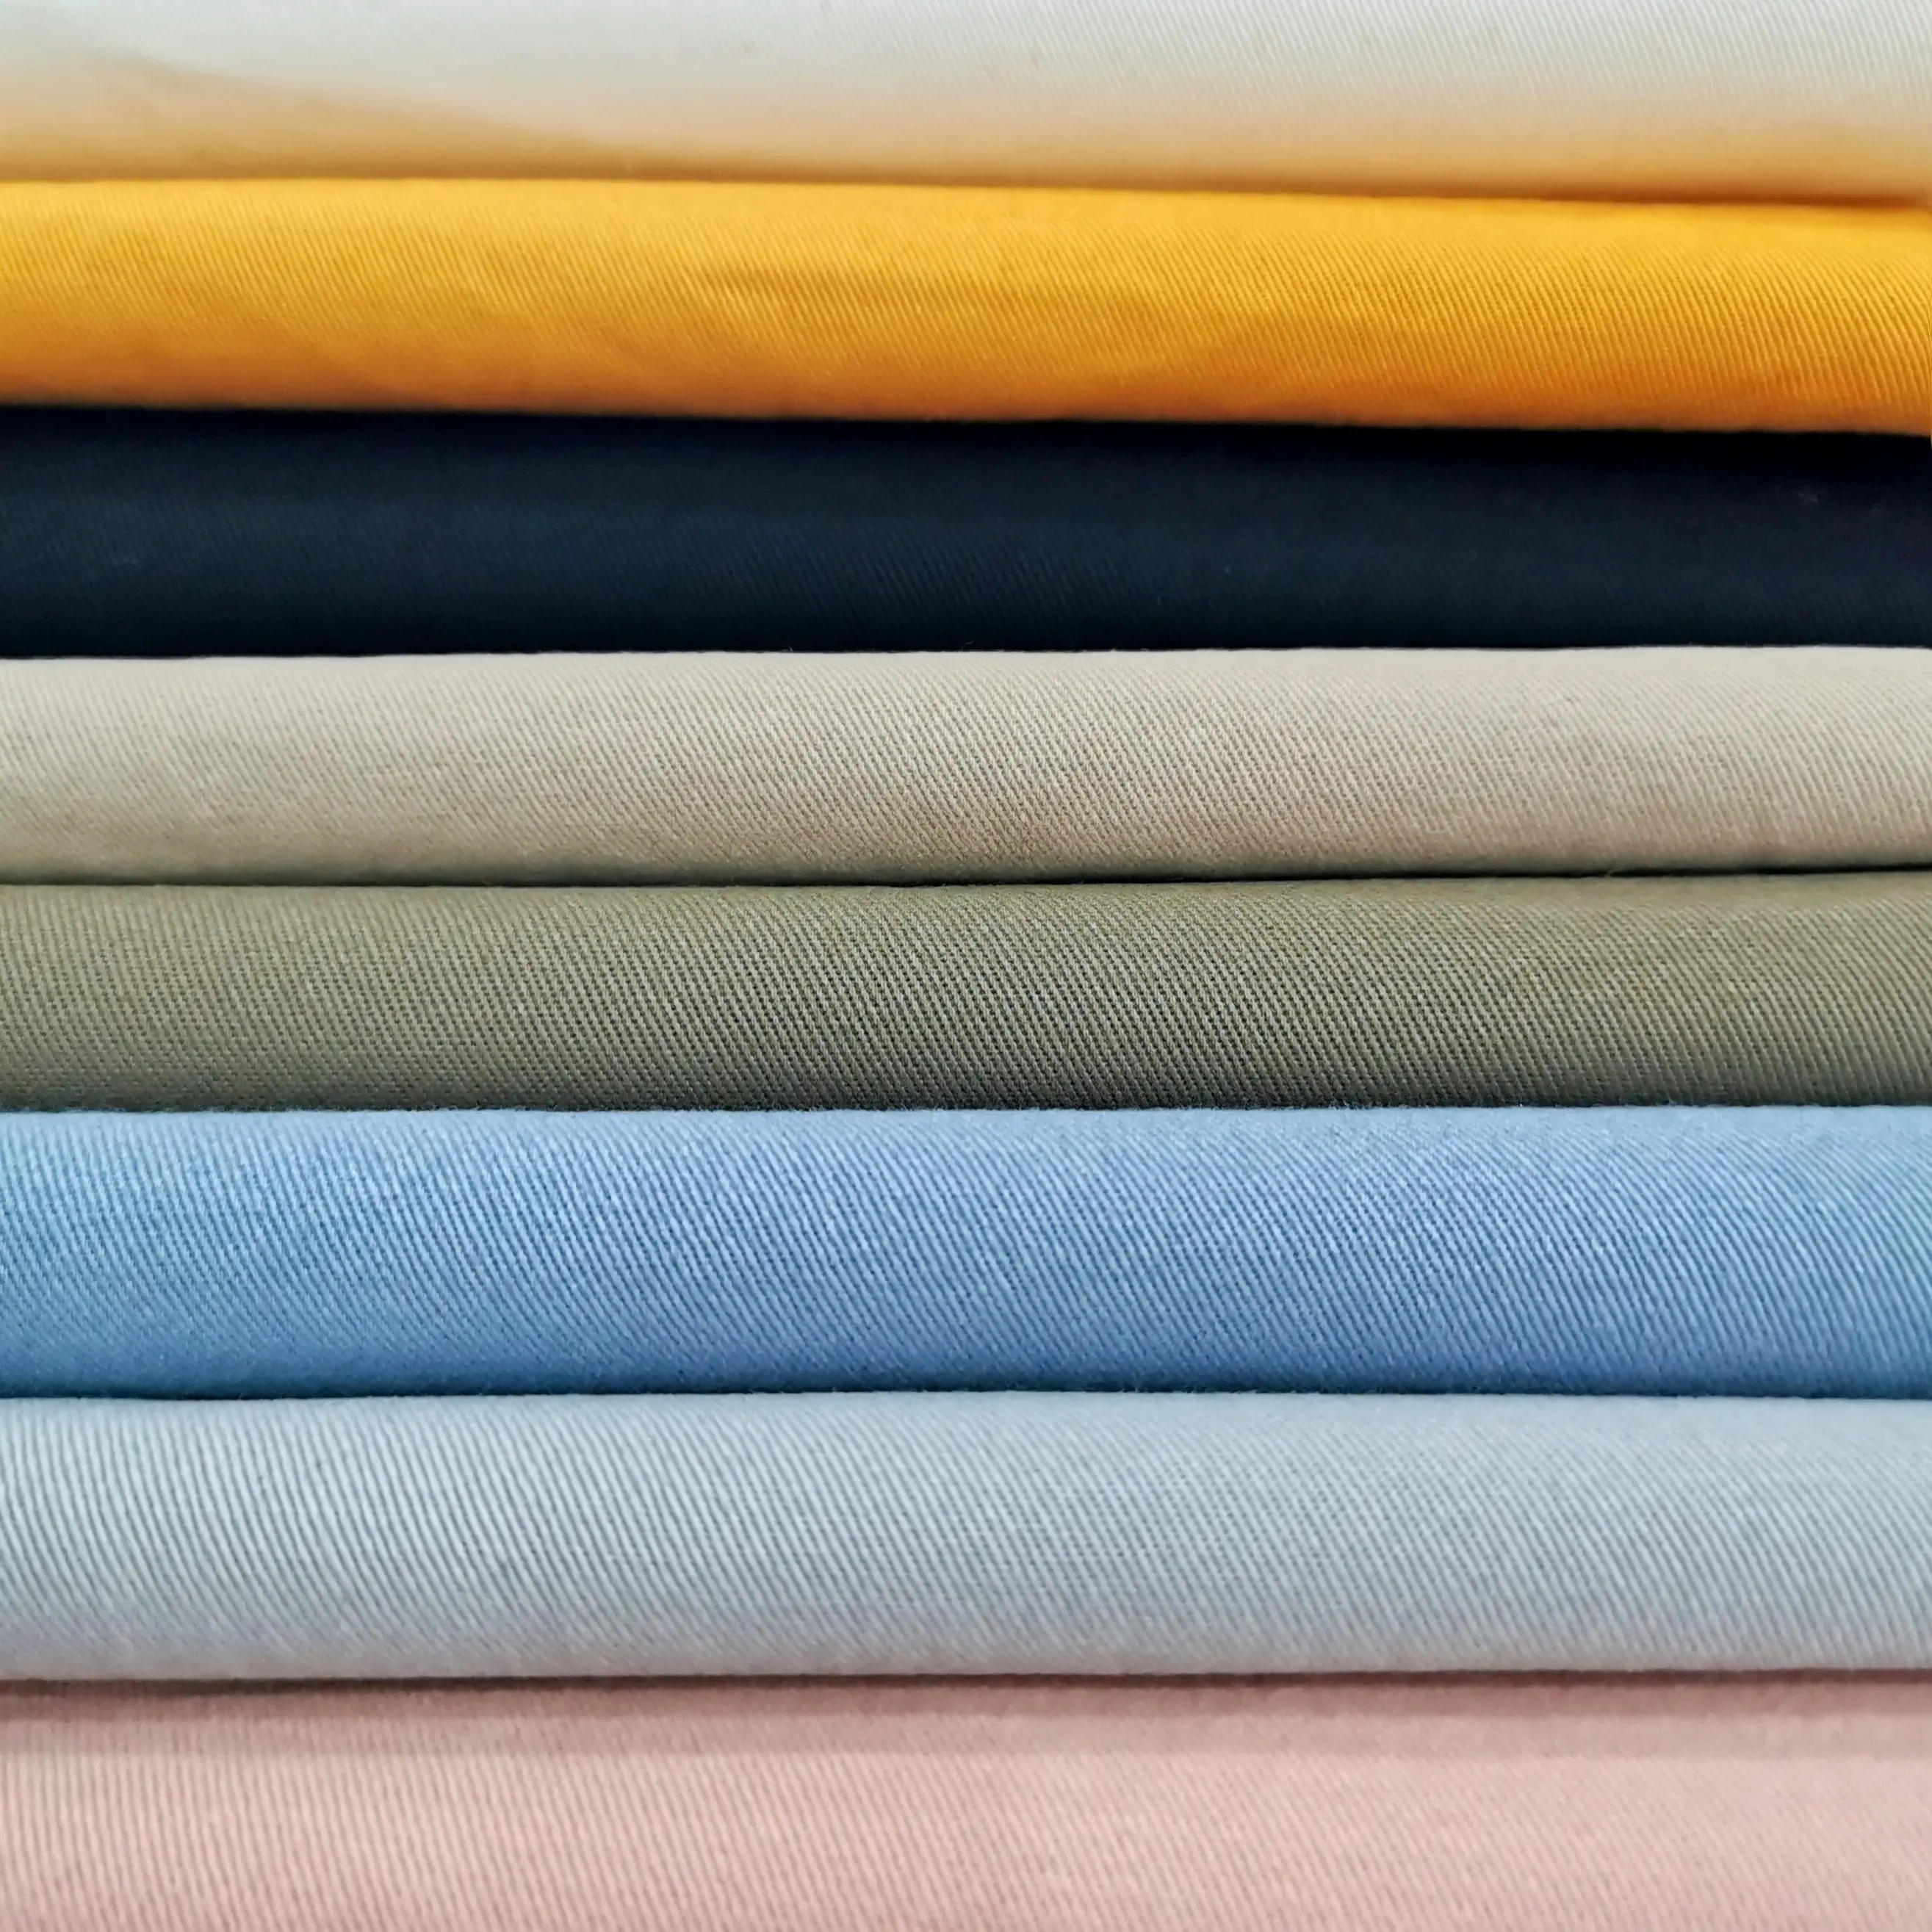 Toptan organik saf renk % 100% pamuk dimi katı boyalı tuval giysi kumaşı tekstil